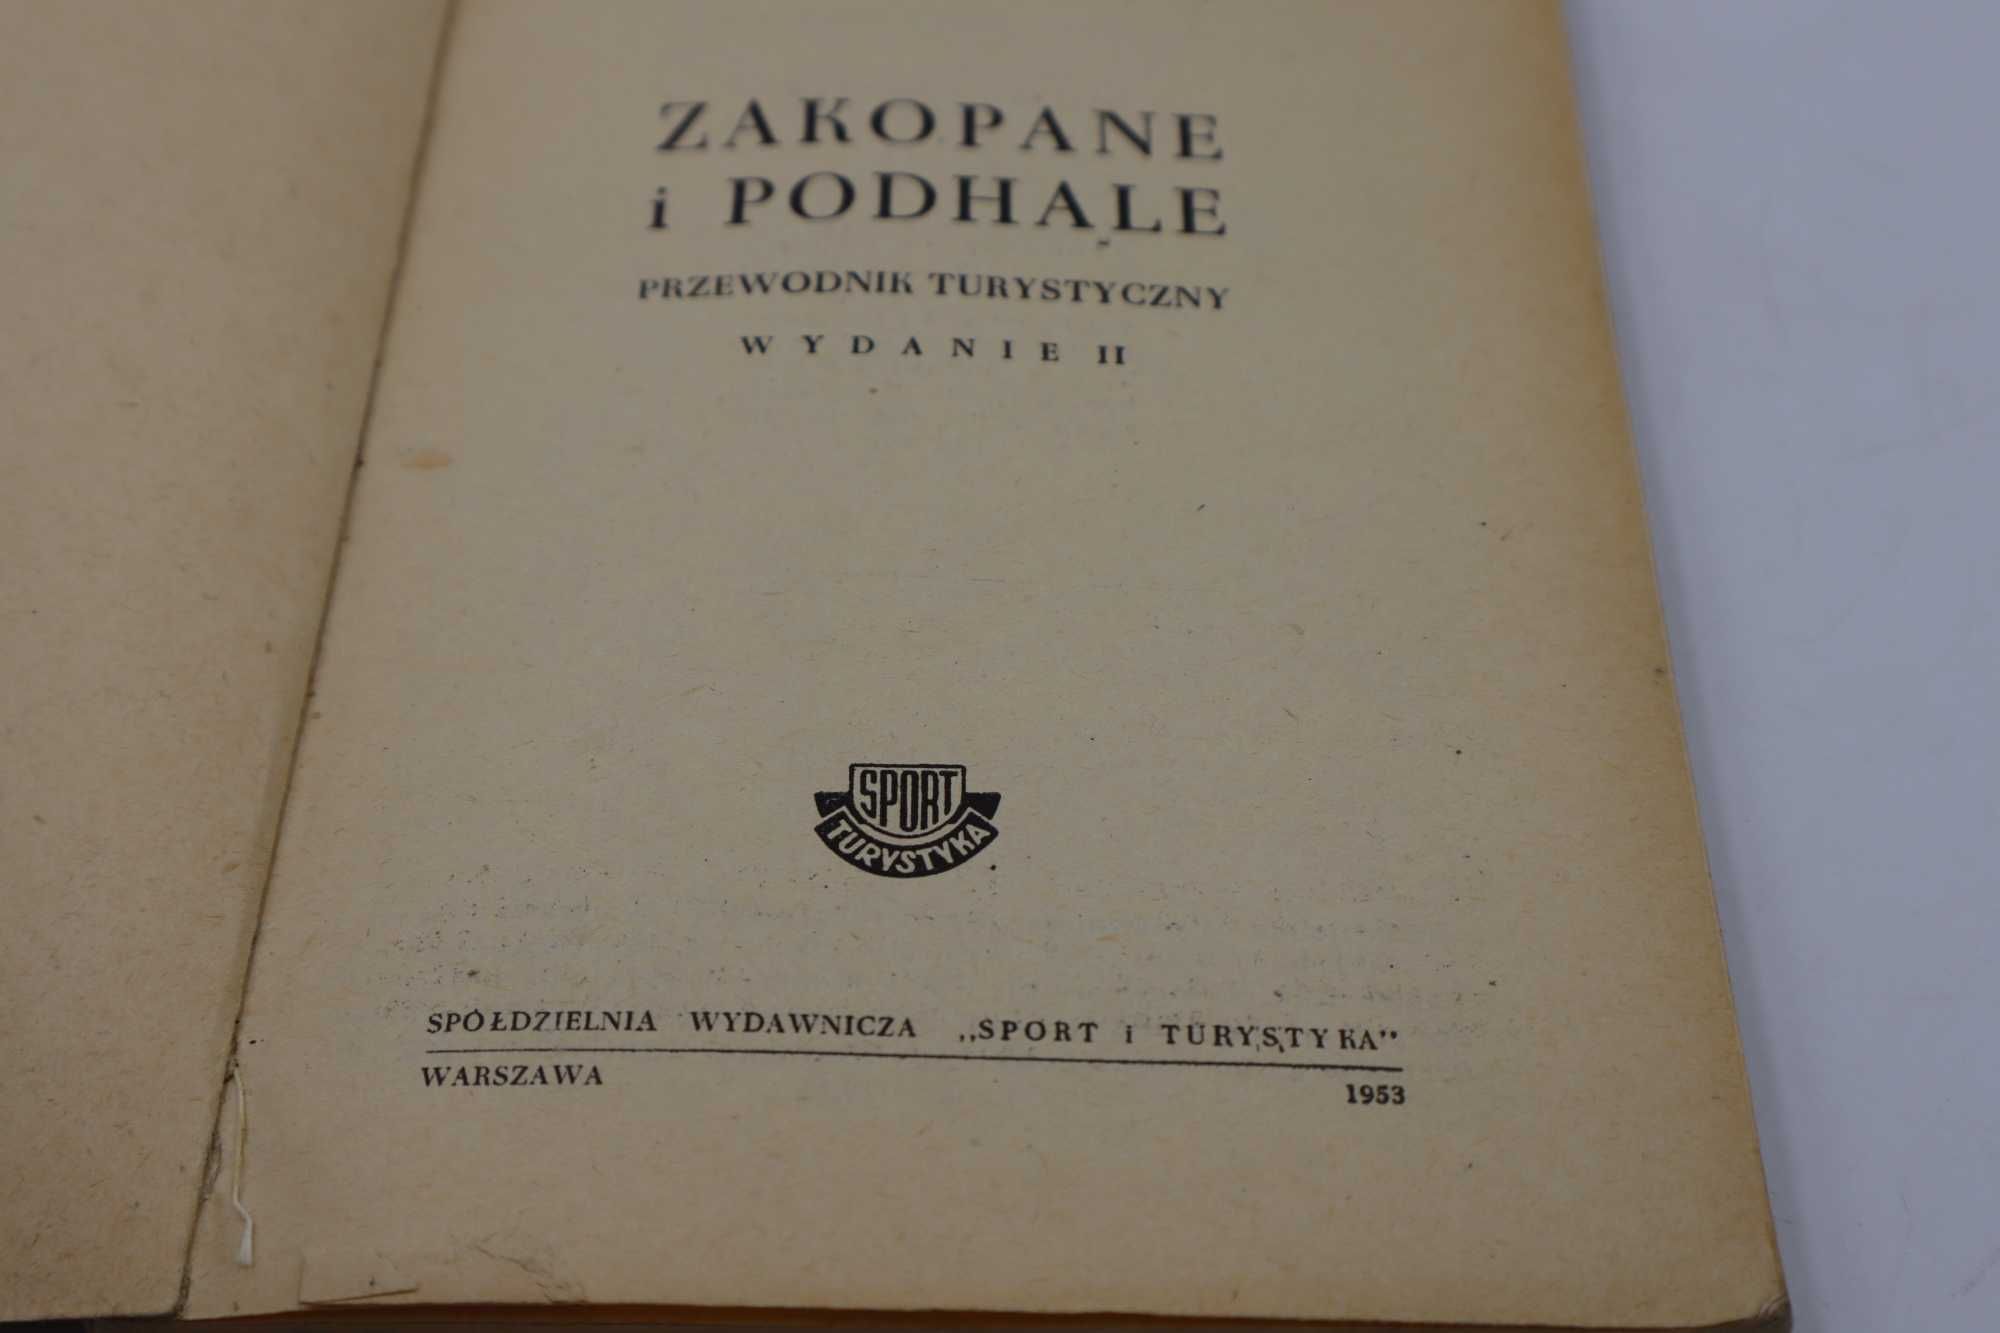 Przewodnik Zakopane I Podhale 1953 r m Zwoliński Sport i turystyka